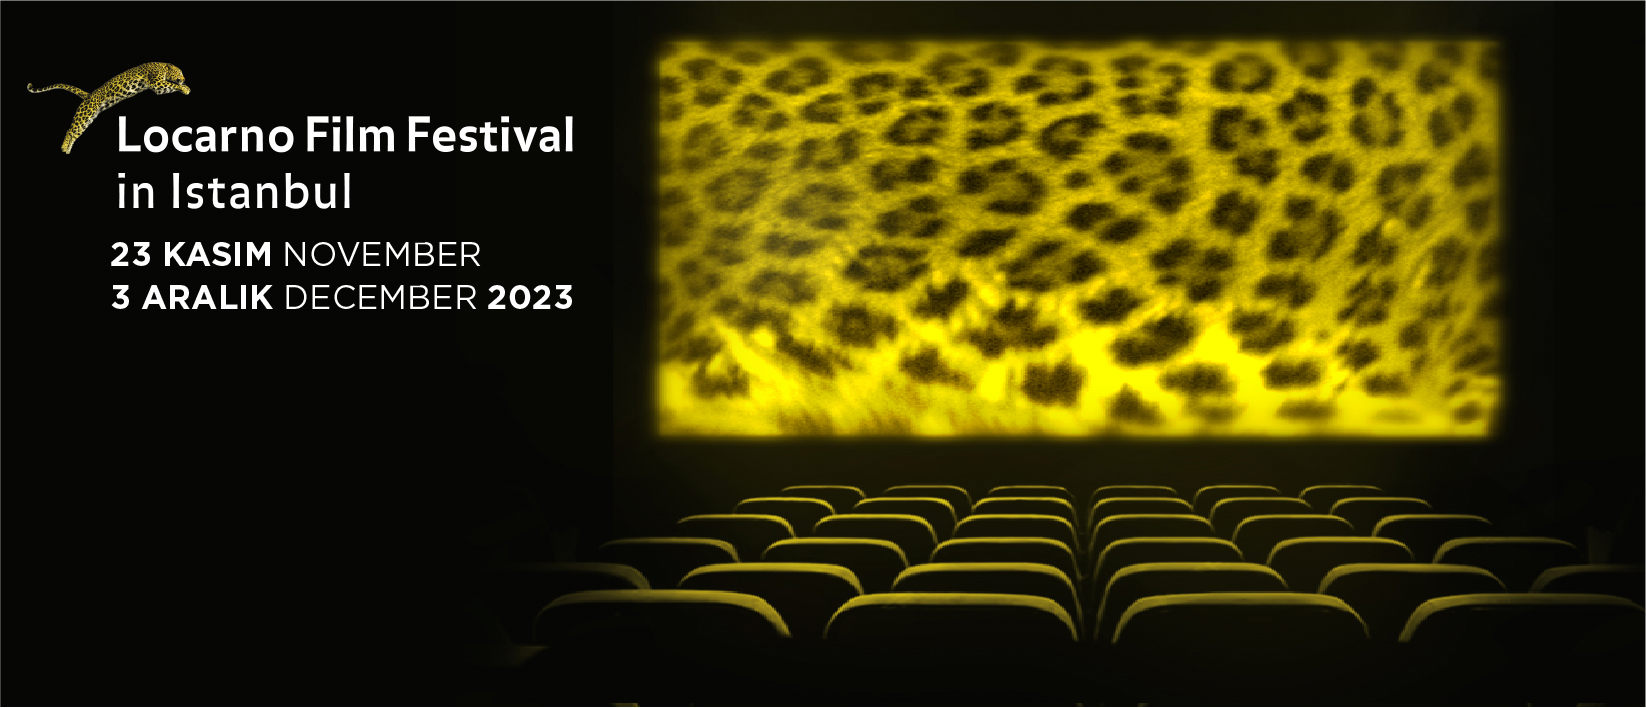 Locarno Film Festival In Istanbul